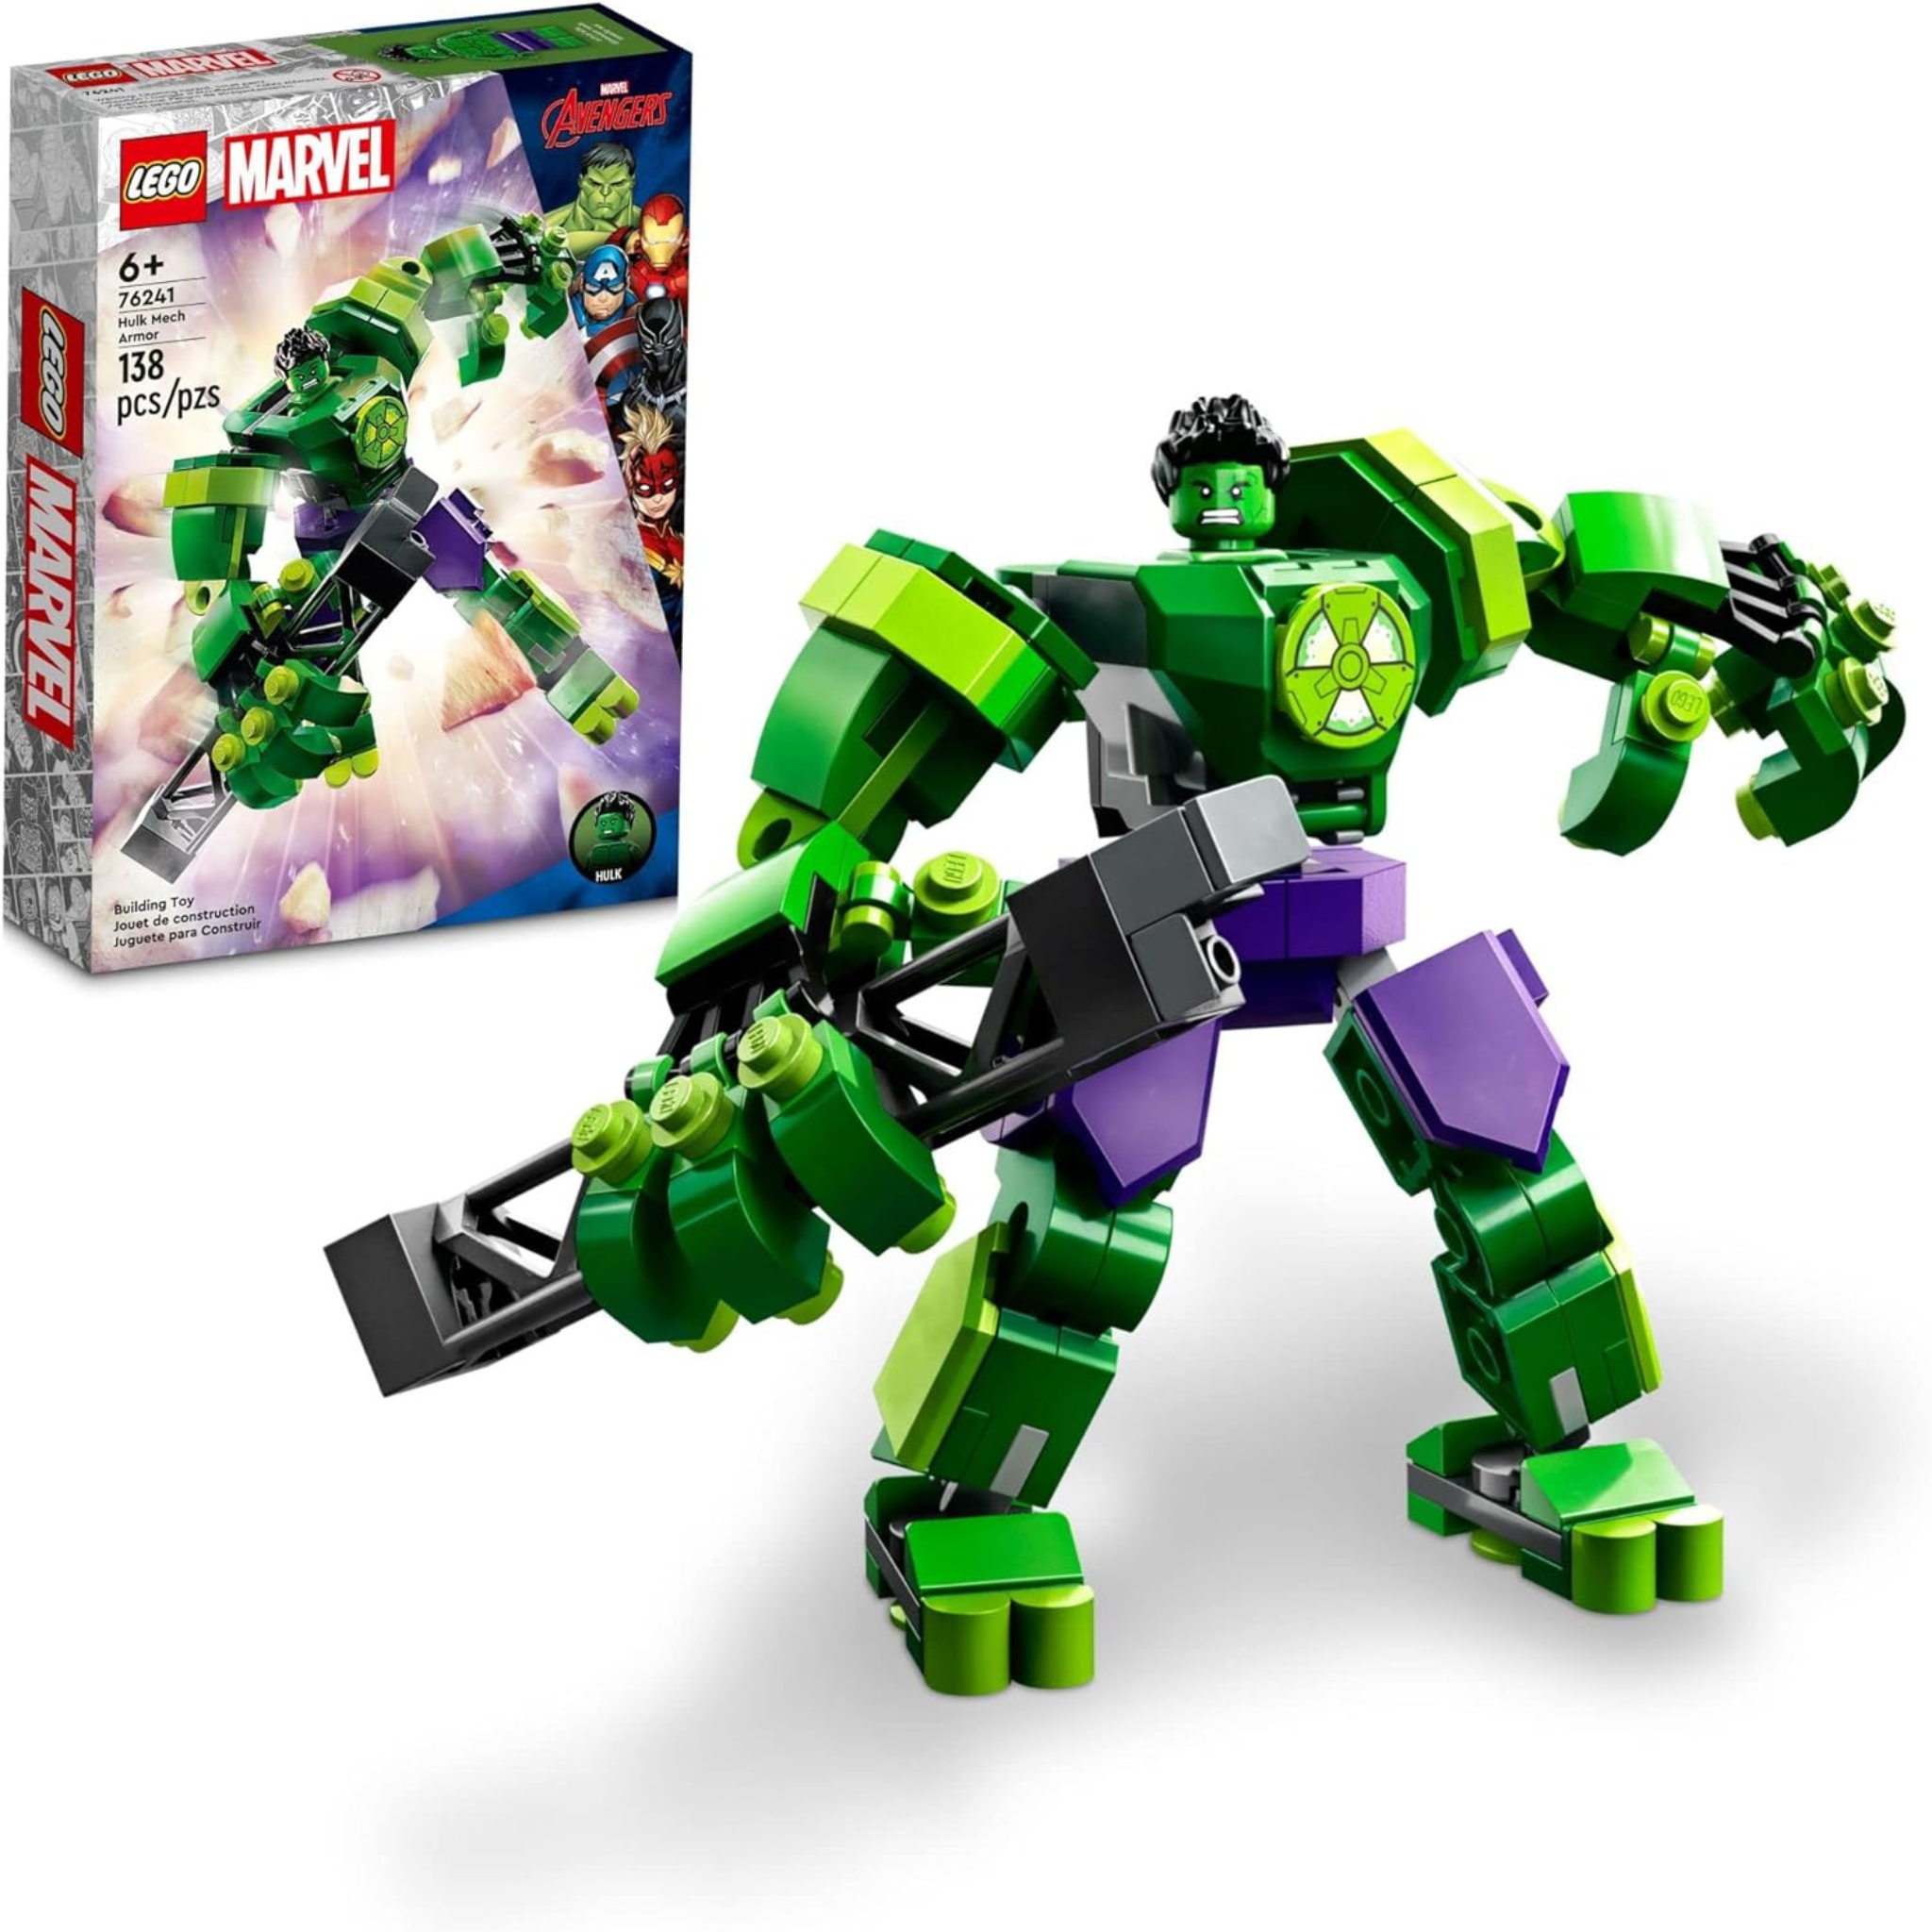 LEGO Marvel Hulk Mech Armor Avengers Action Figure Set